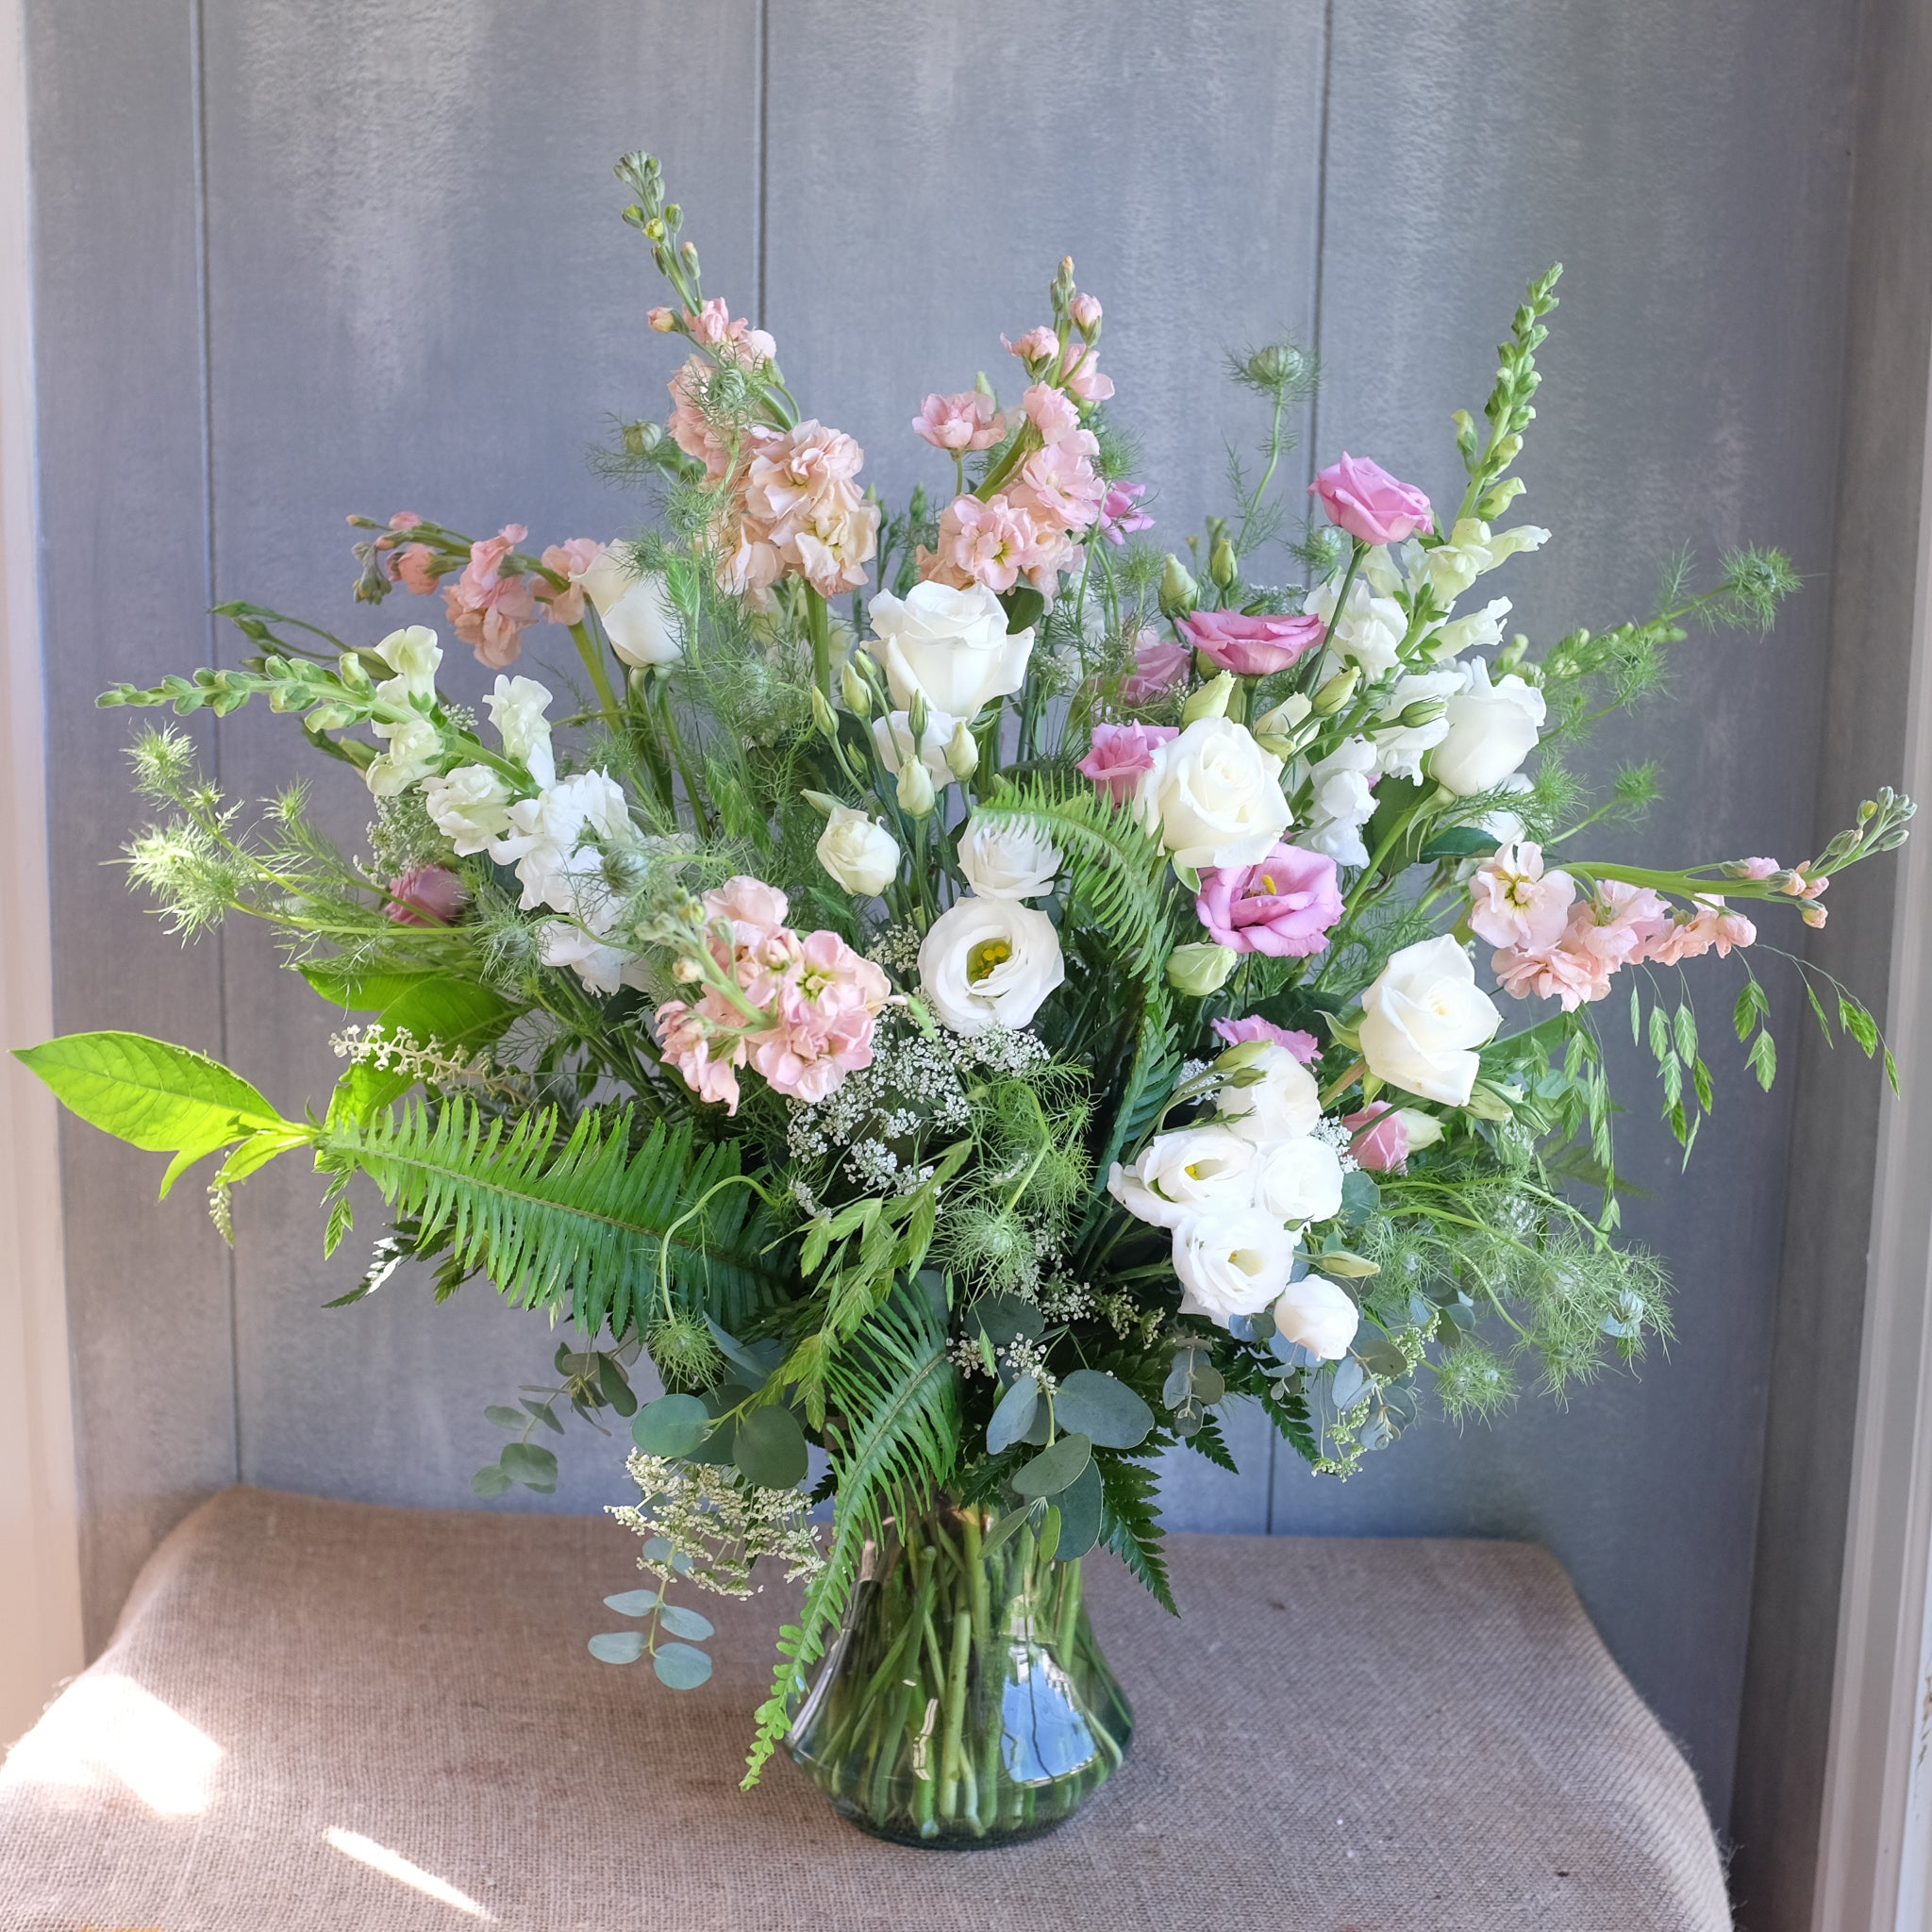 Flower Bouquet by Michler Florist, Lexington KY.